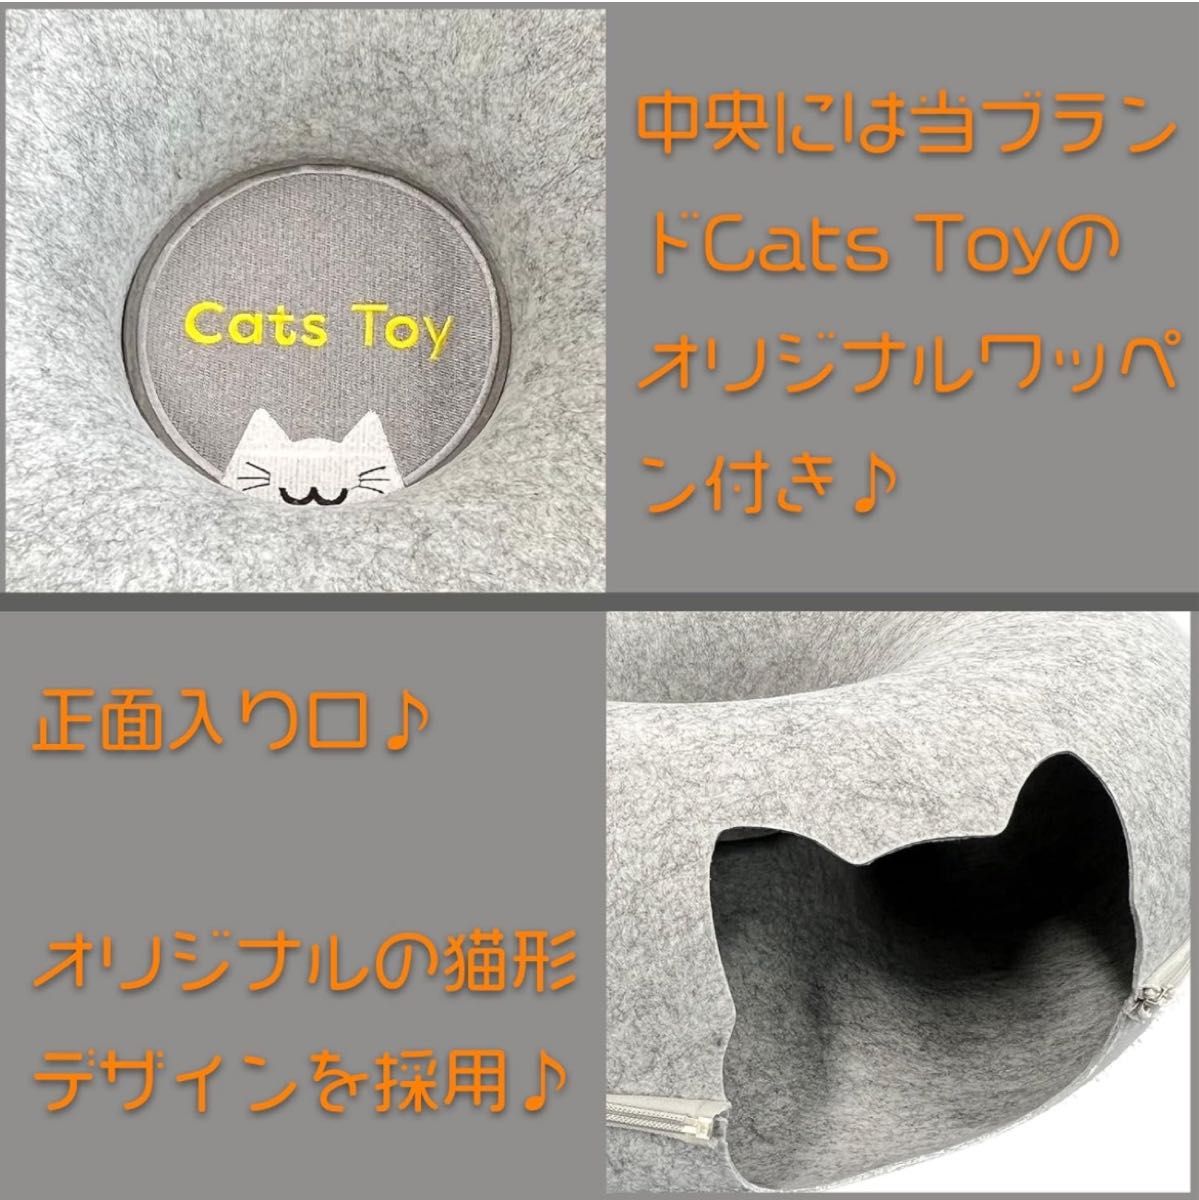 【Cats toy】キャッツトイトンネル 猫 ベット 猫の隠れ家 トンネル型 ネコ ベッド キャットハウス 猫 ハウス